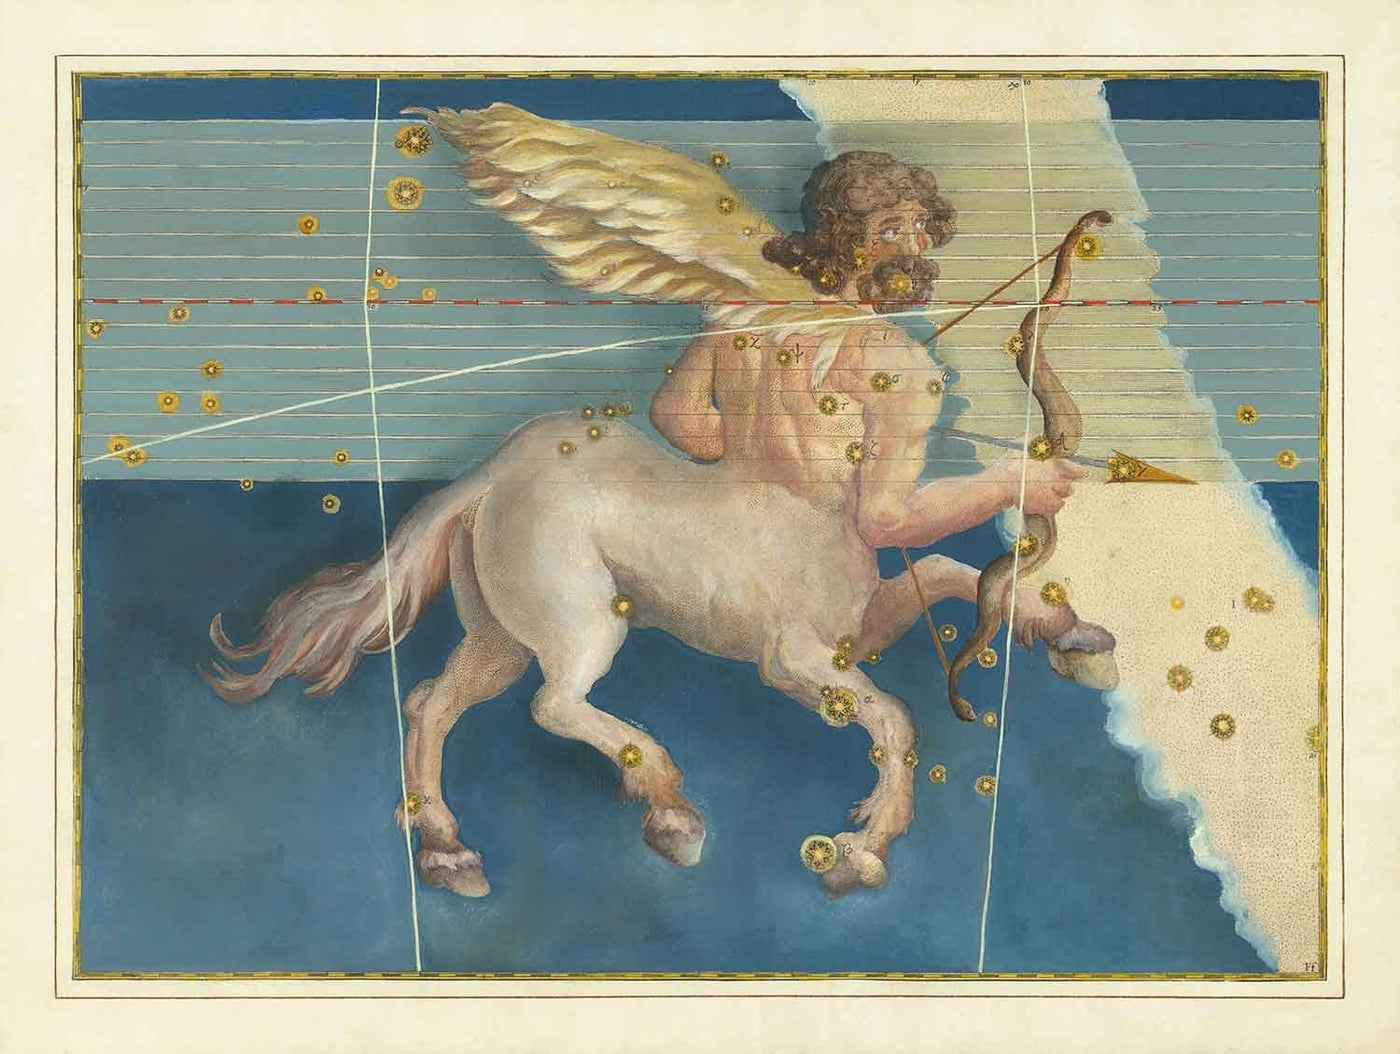 Antiguo Mapa Estelar de Sagitario, 1603 por Johann Bayer - Carta Astrológica del Zodiaco - El signo del Horóscopo Centauro